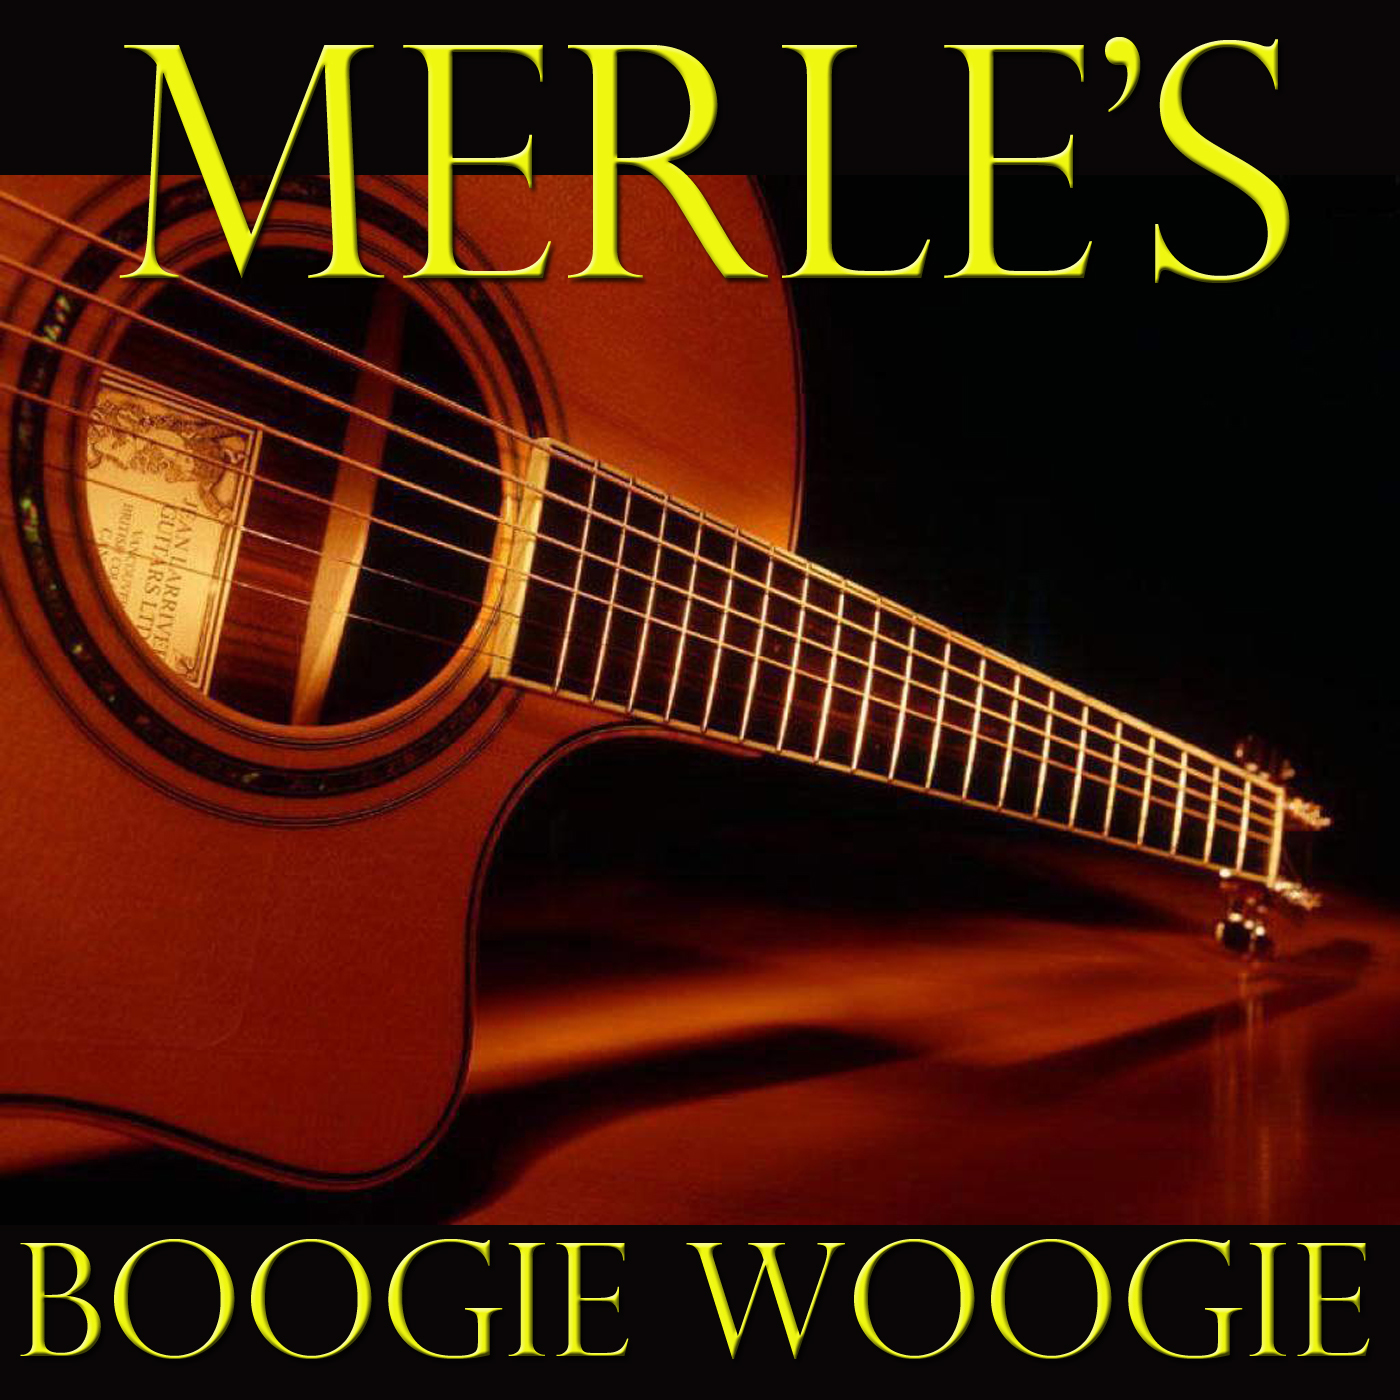 Merle's Boogie Woogie